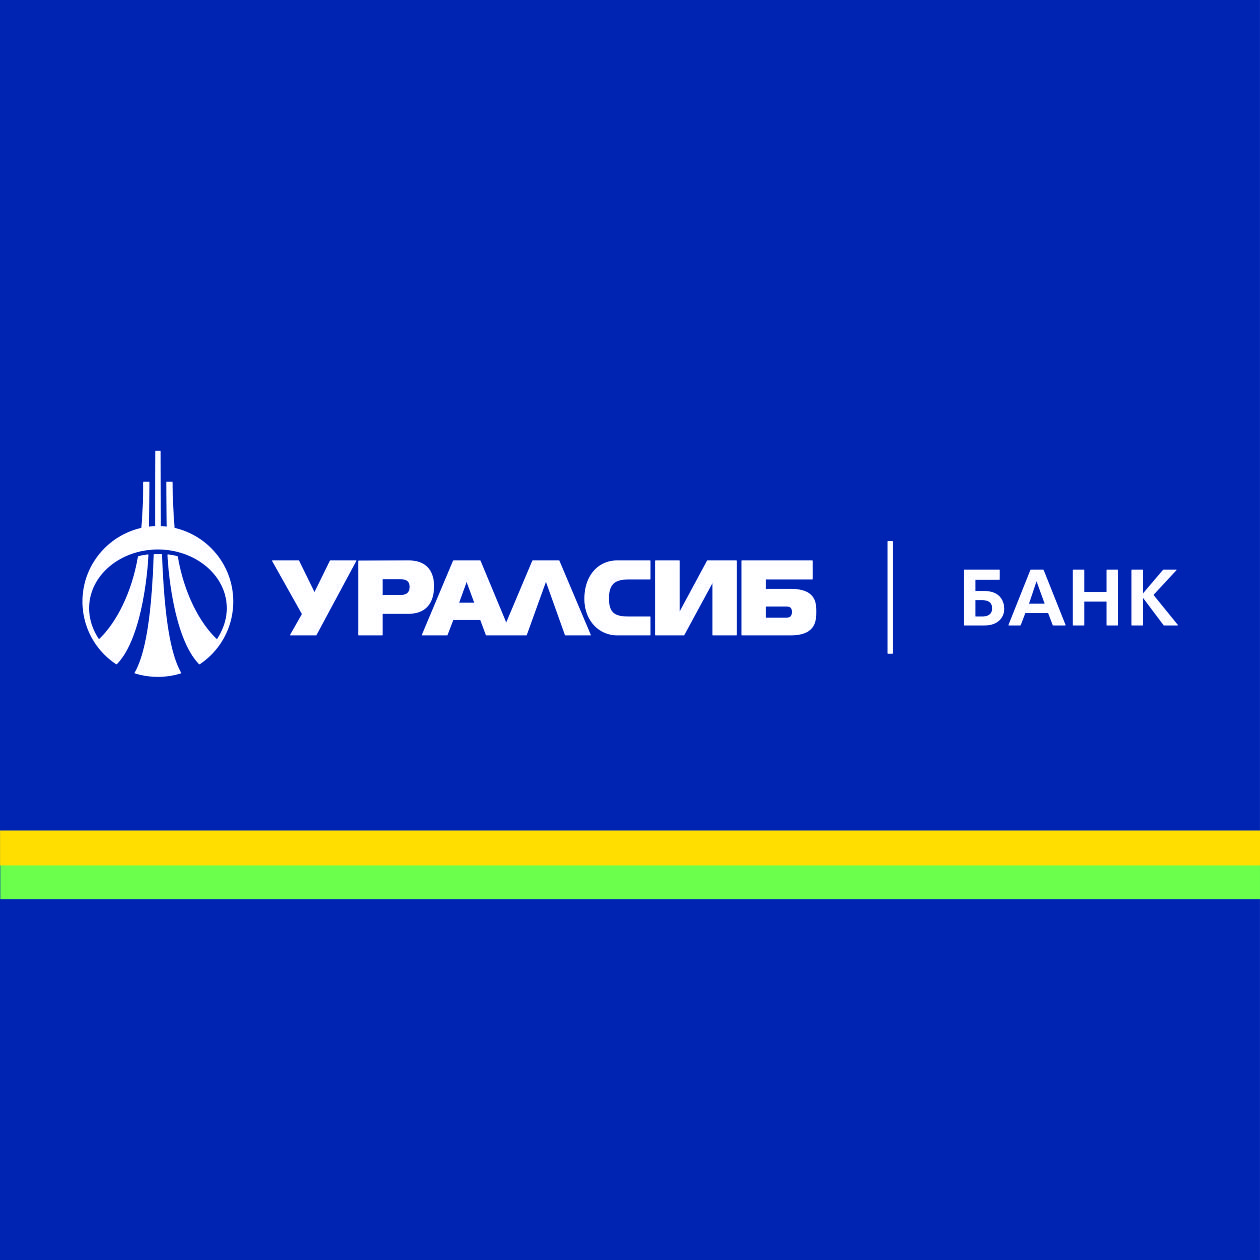 Банк УРАЛСИБ предлагает срочный депозит «Стратегия» 